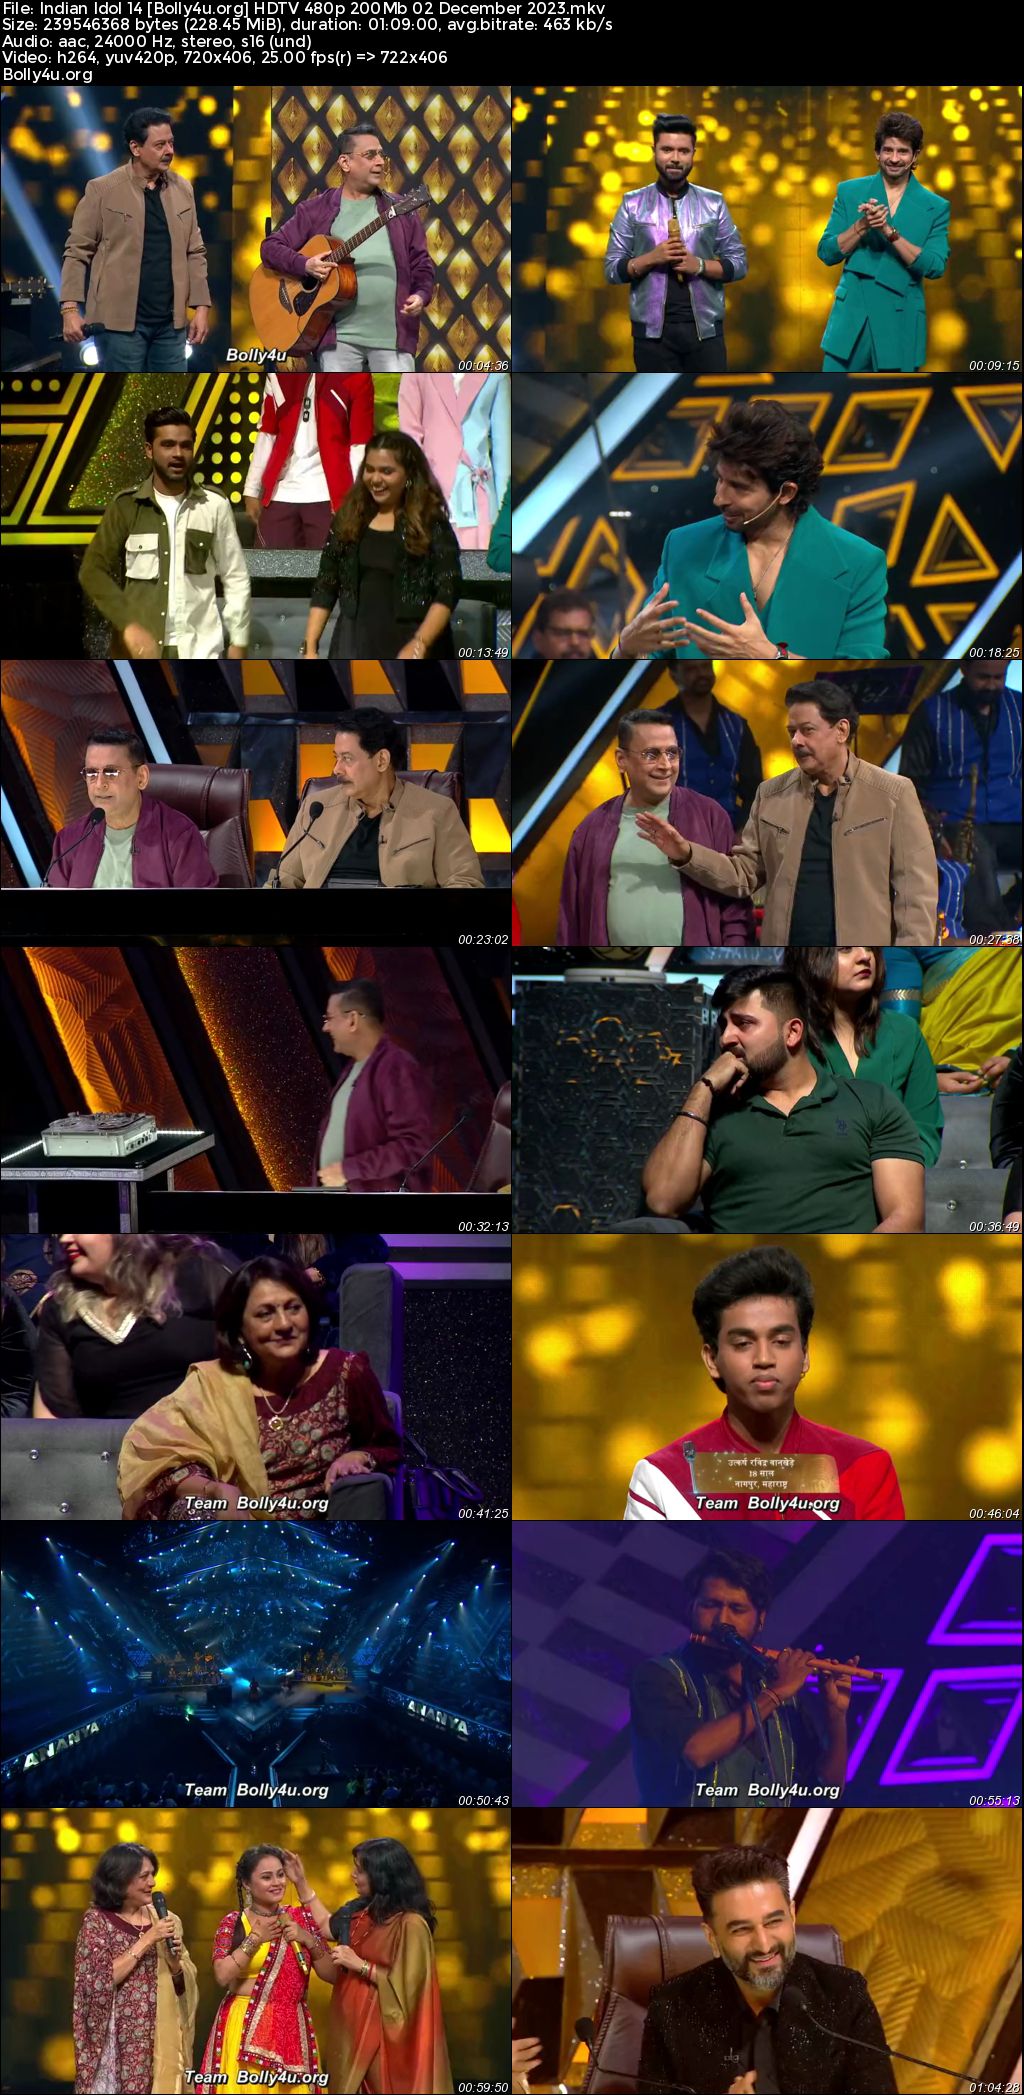 Indian Idol 14 HDTV 480p 200MB 02 December 2023 Download